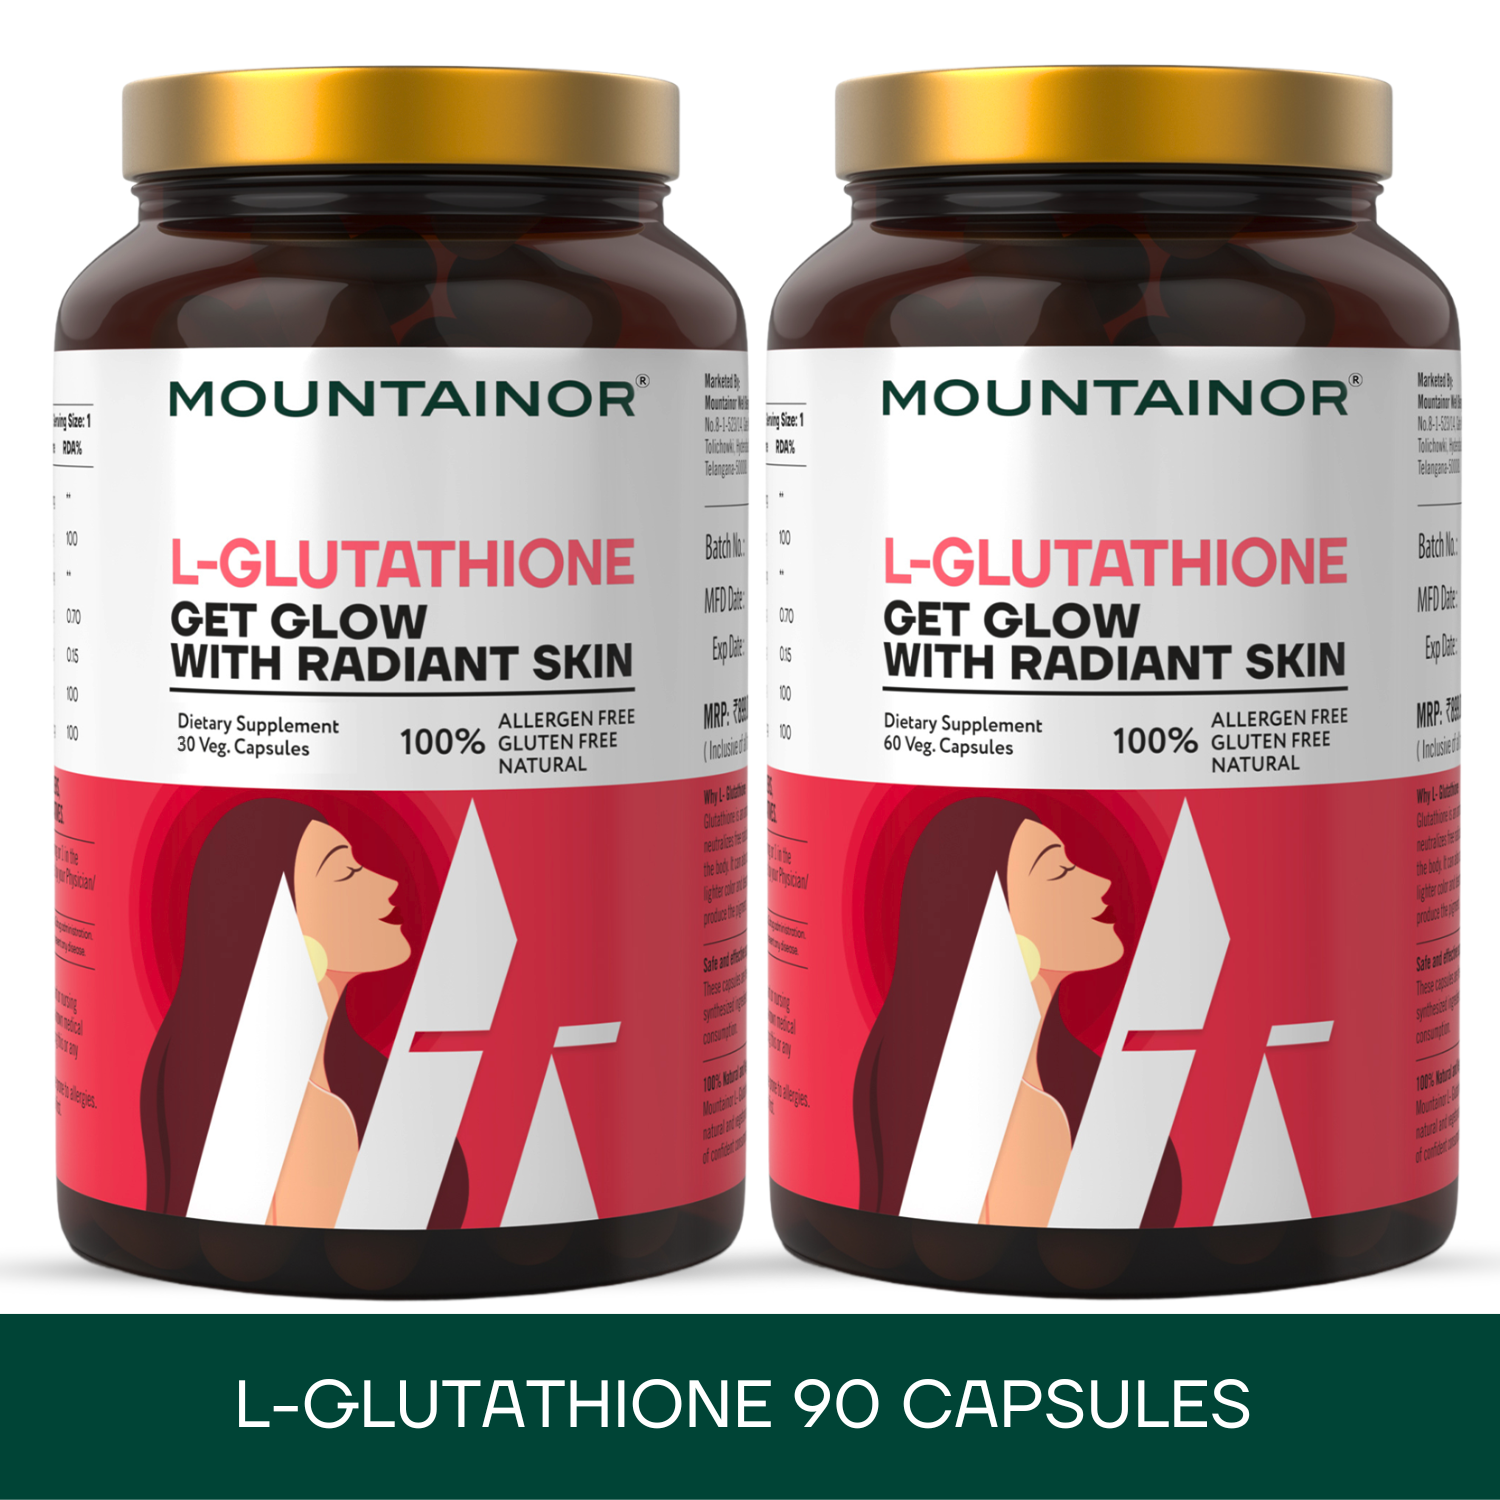 L-Glutathione 60 Capsules + L-Glutathione 30 Capsules - Combo